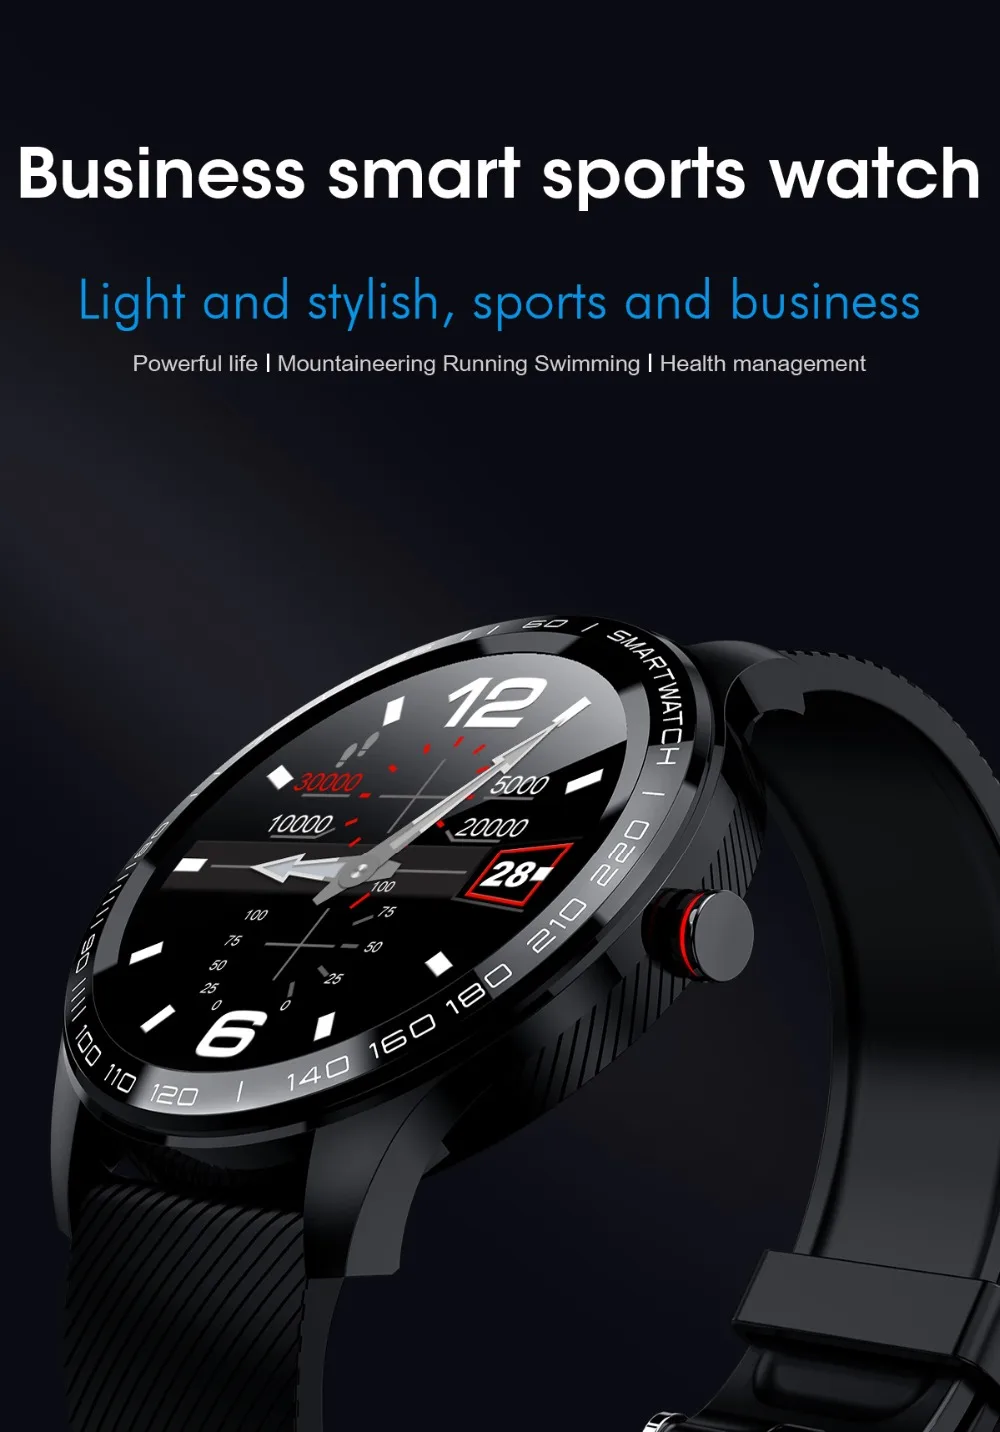 L9 Смарт часы ЭКГ сердечный ритм звонки напоминание полный сенсорный Smartwatch IP68 Водонепроницаемые часы для мужчин для Android IOS PK L7 GT2